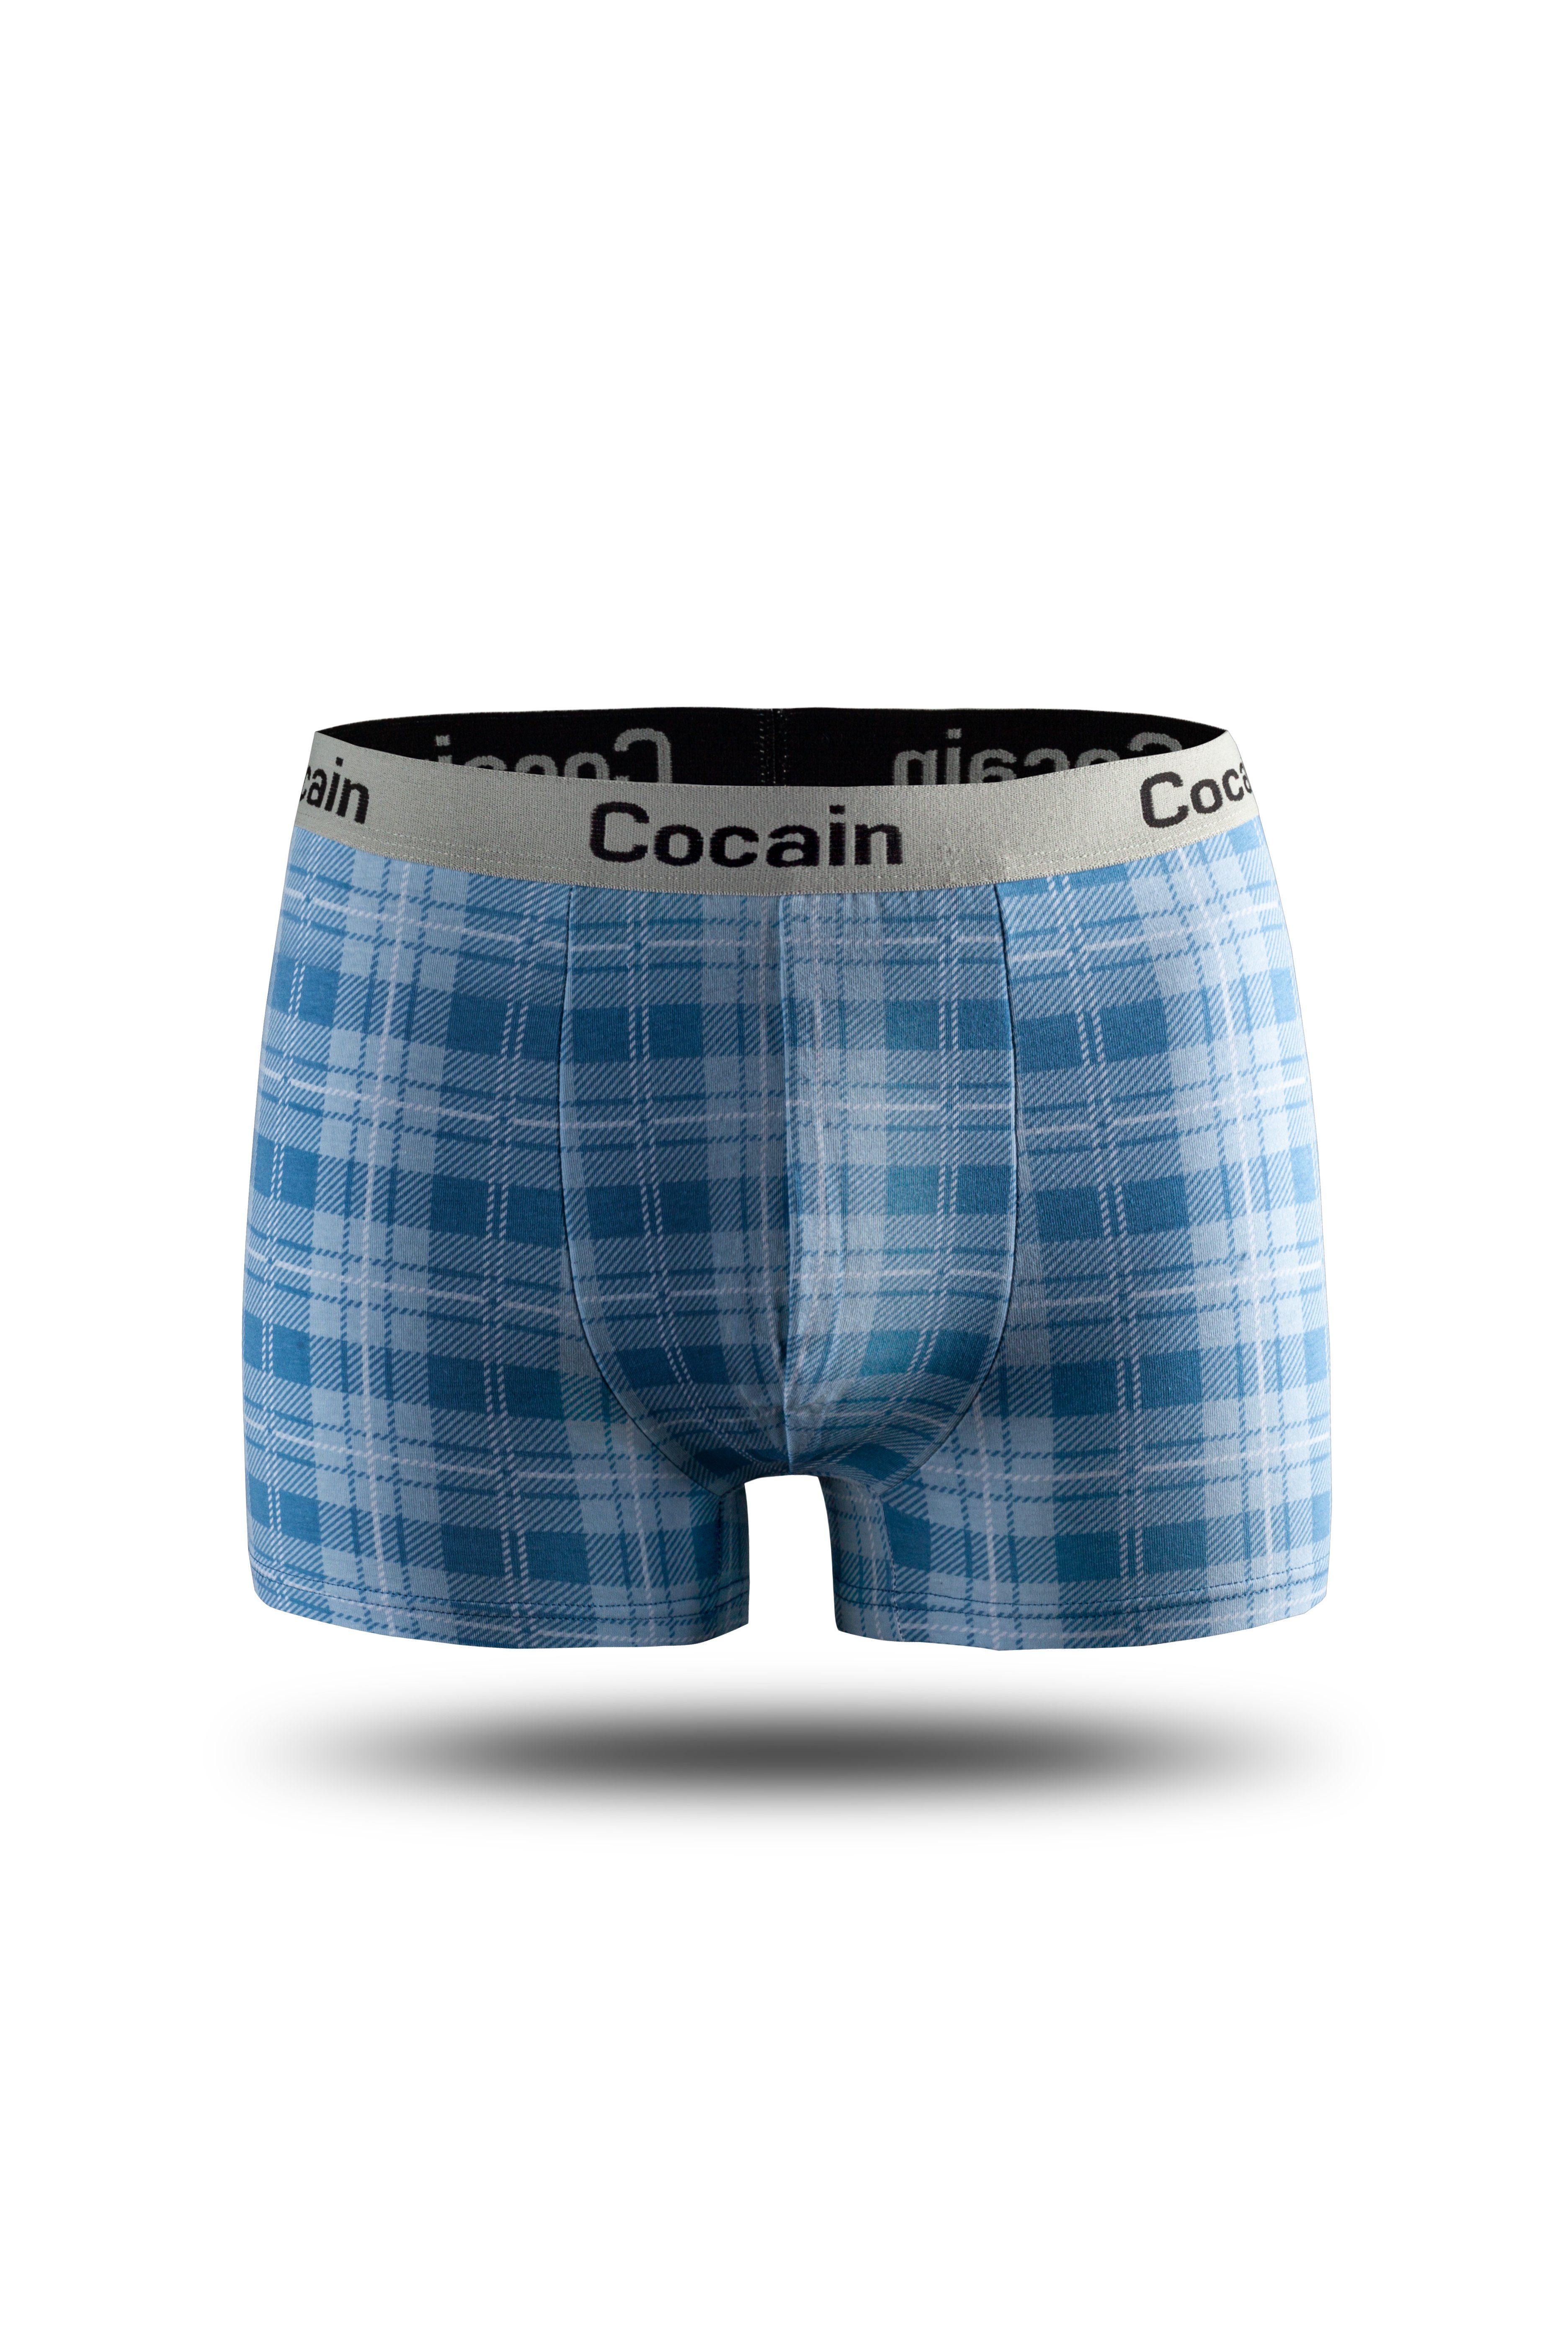 Cocain underwear Boxershorts kariert Europa 5er-Pack) am (5-St., Spitzenqualität Boxershorts Herren aus Logoschriftzug Bund